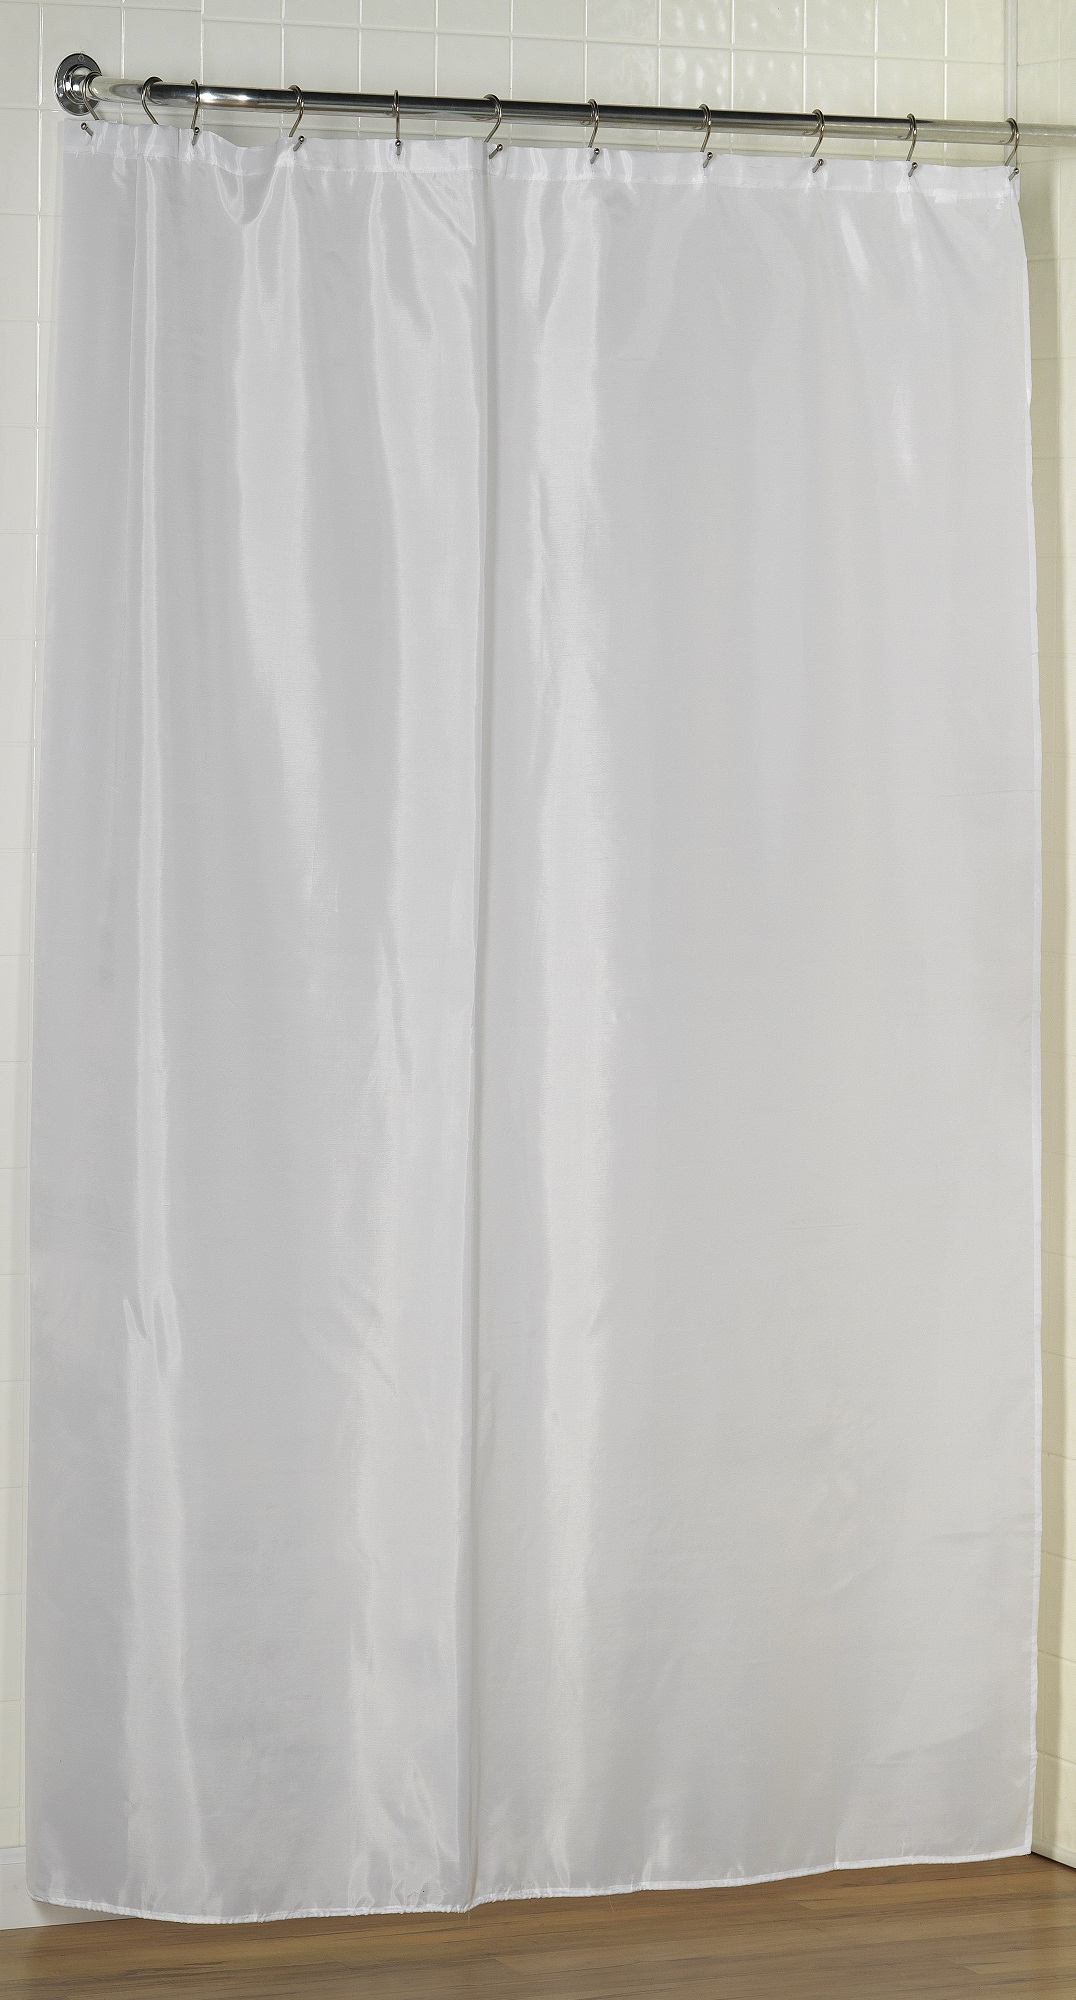 Штора для ванной Carnation Home Fashions Long Liner White защитная